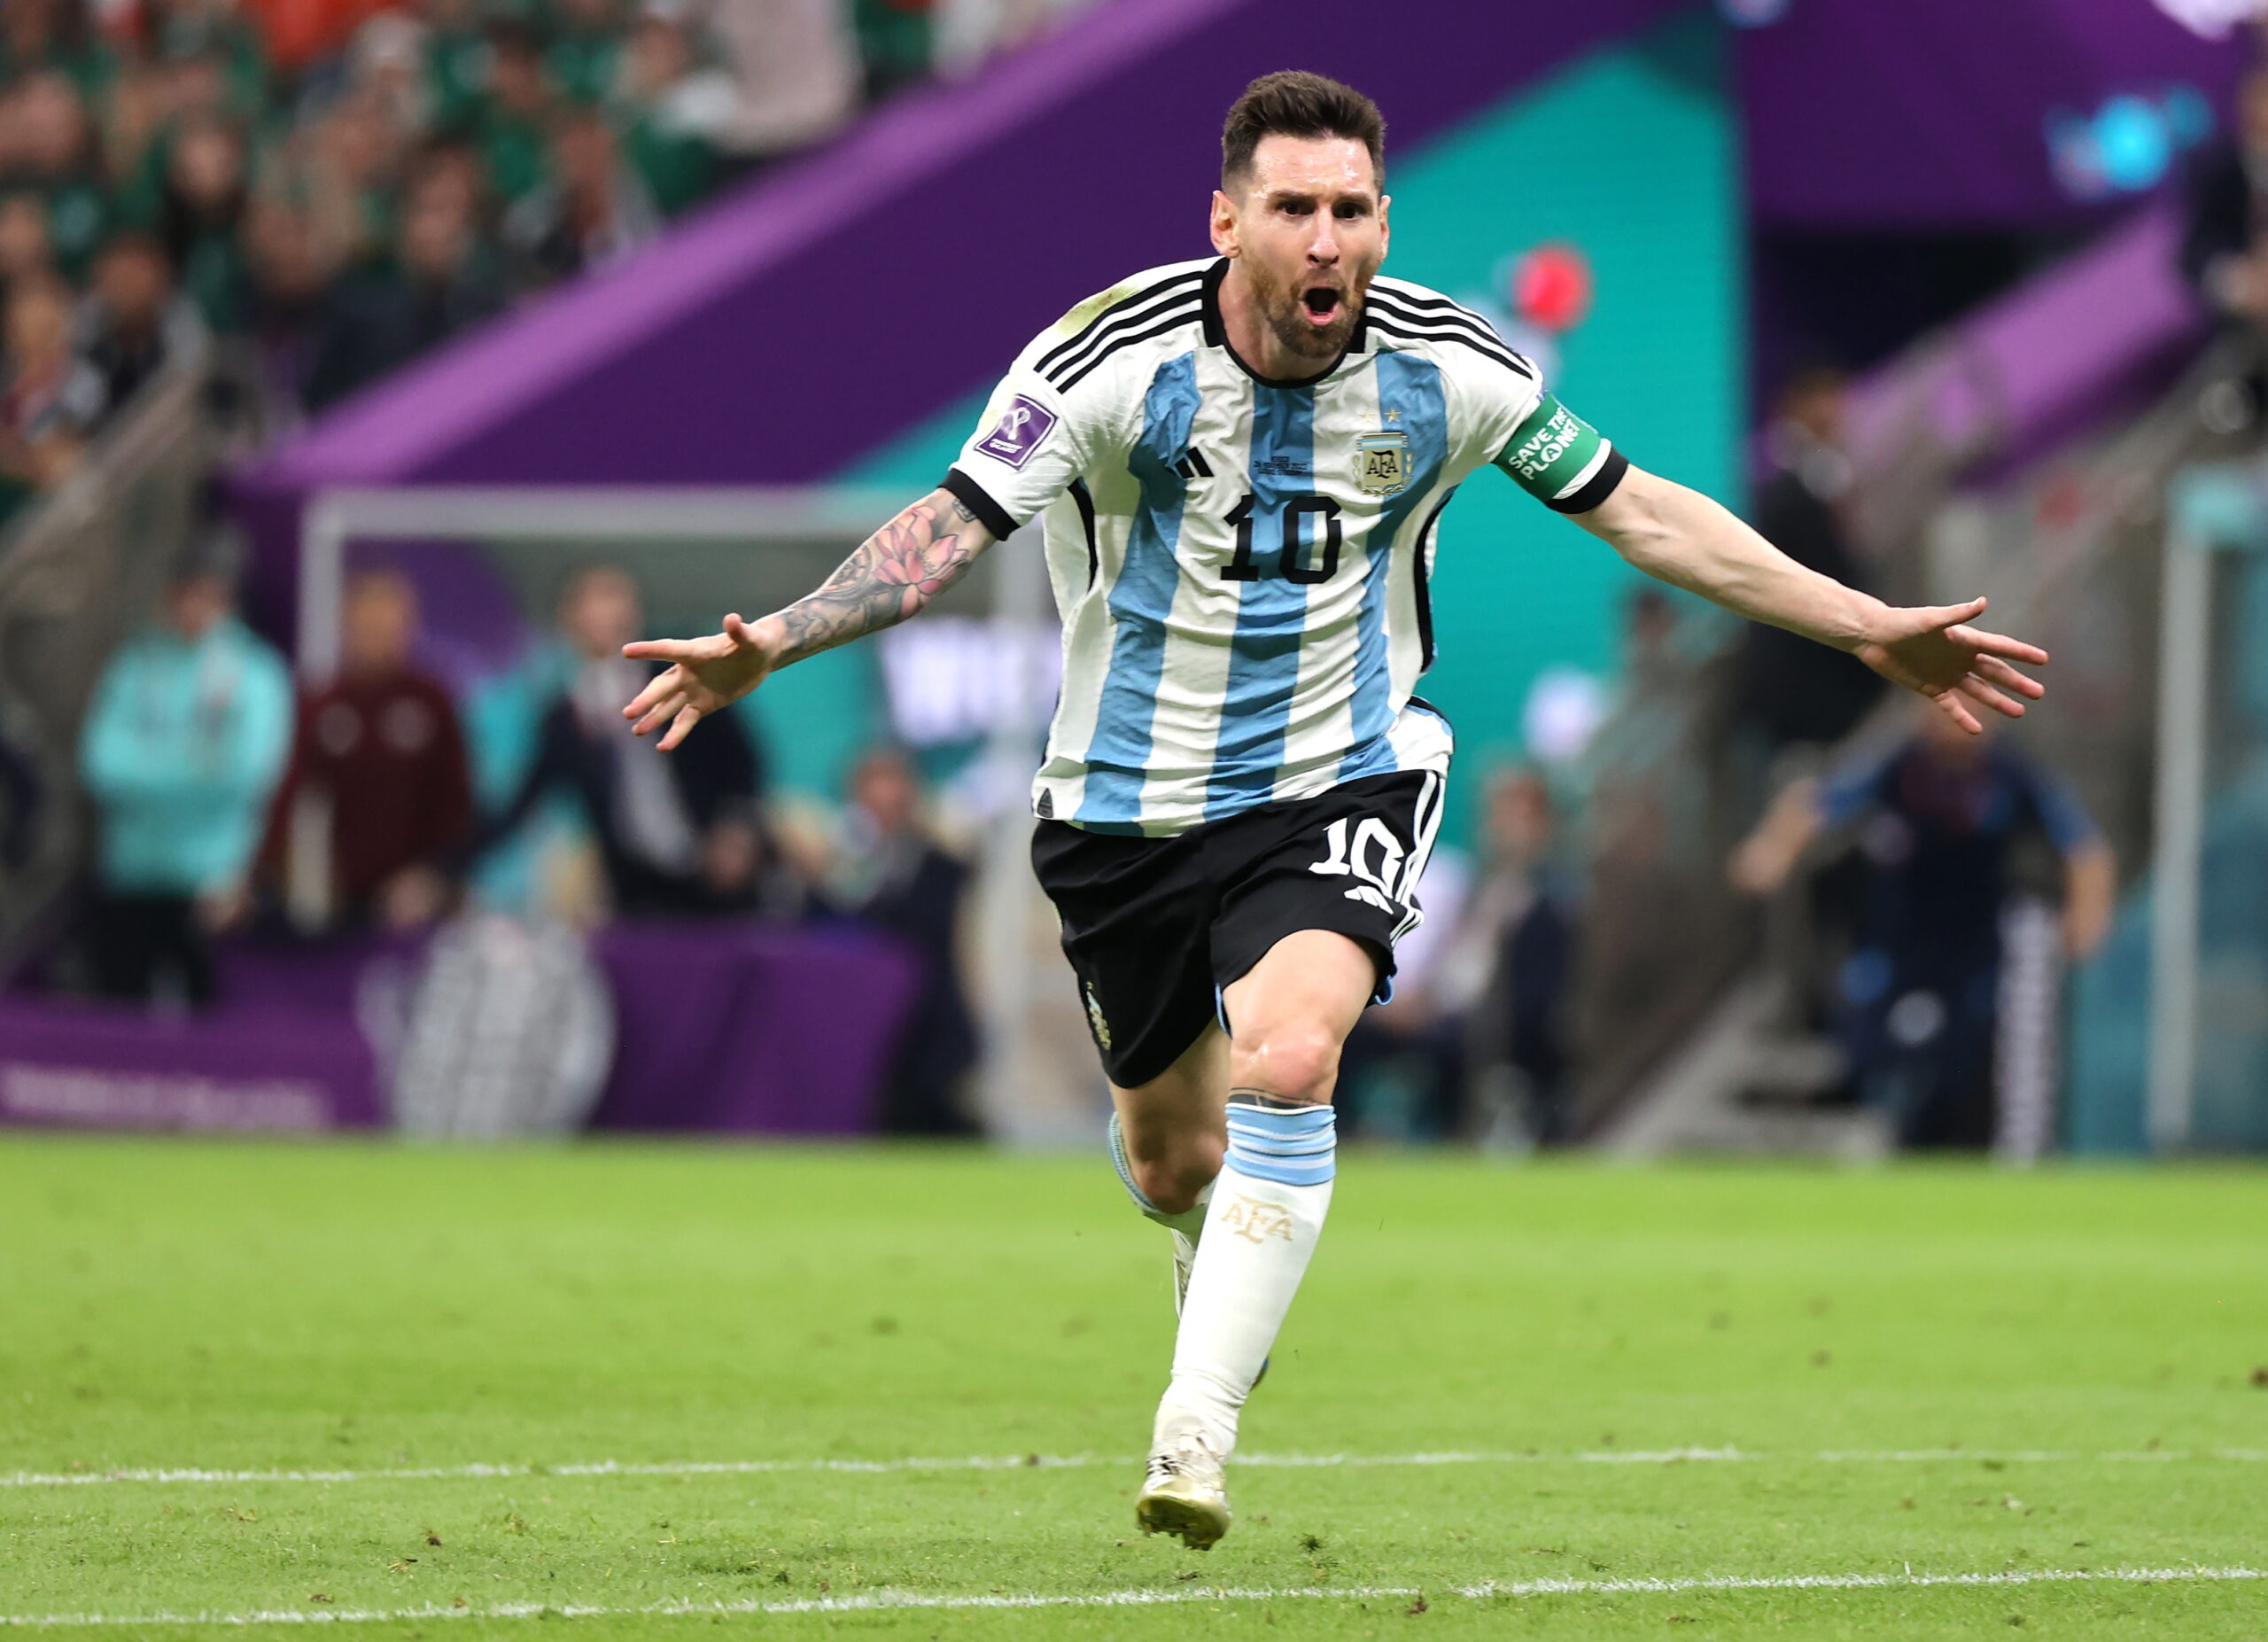 Μουντιάλ 2022, Αργεντινή - Μεξικό 2-0: Ο μάγος Μέσι τη σήκωσε στους ώμους και την κράτησε ζωντανή